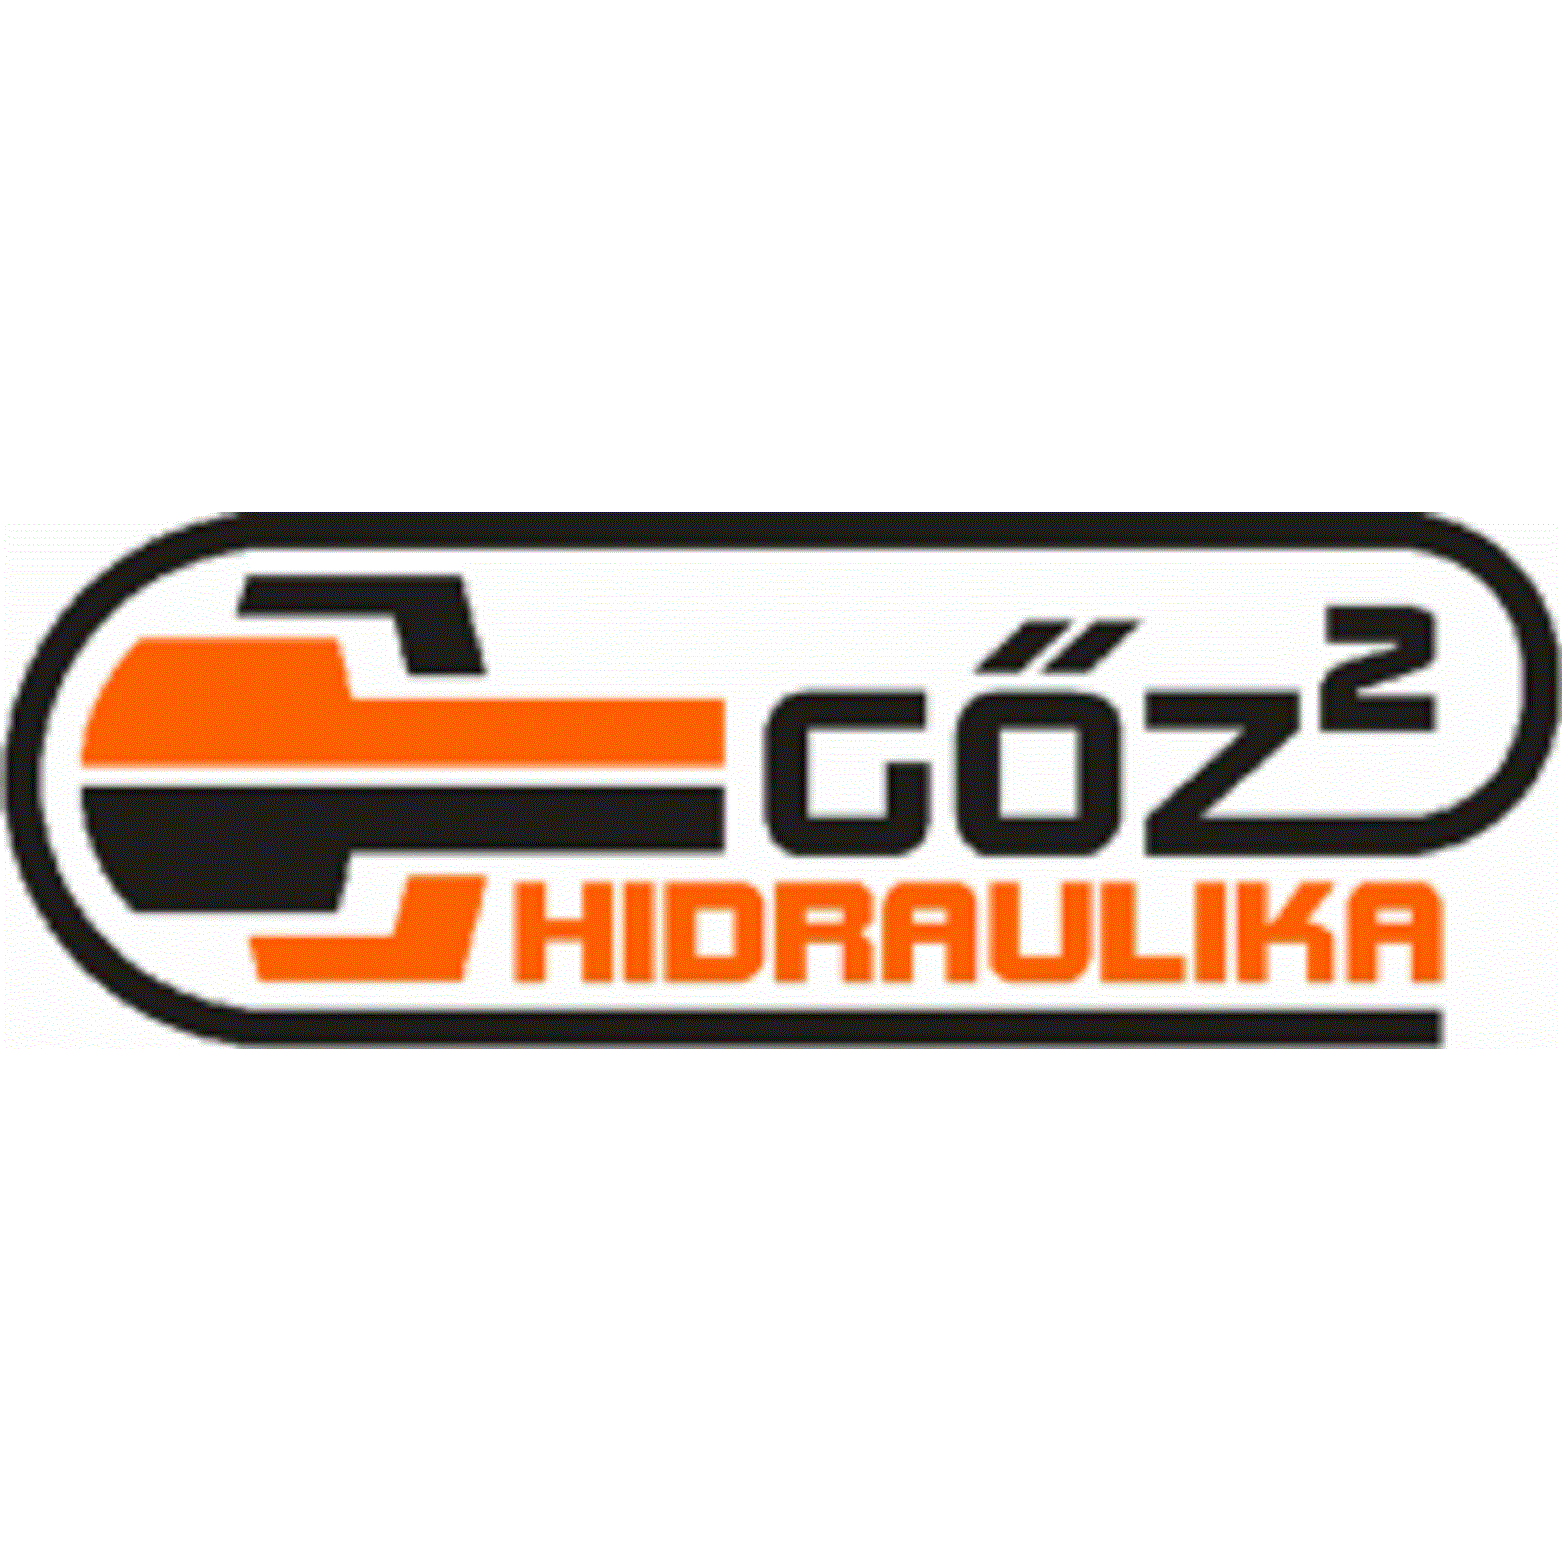 Gőz 2 Kft. - Hidraulika Centrum Logo